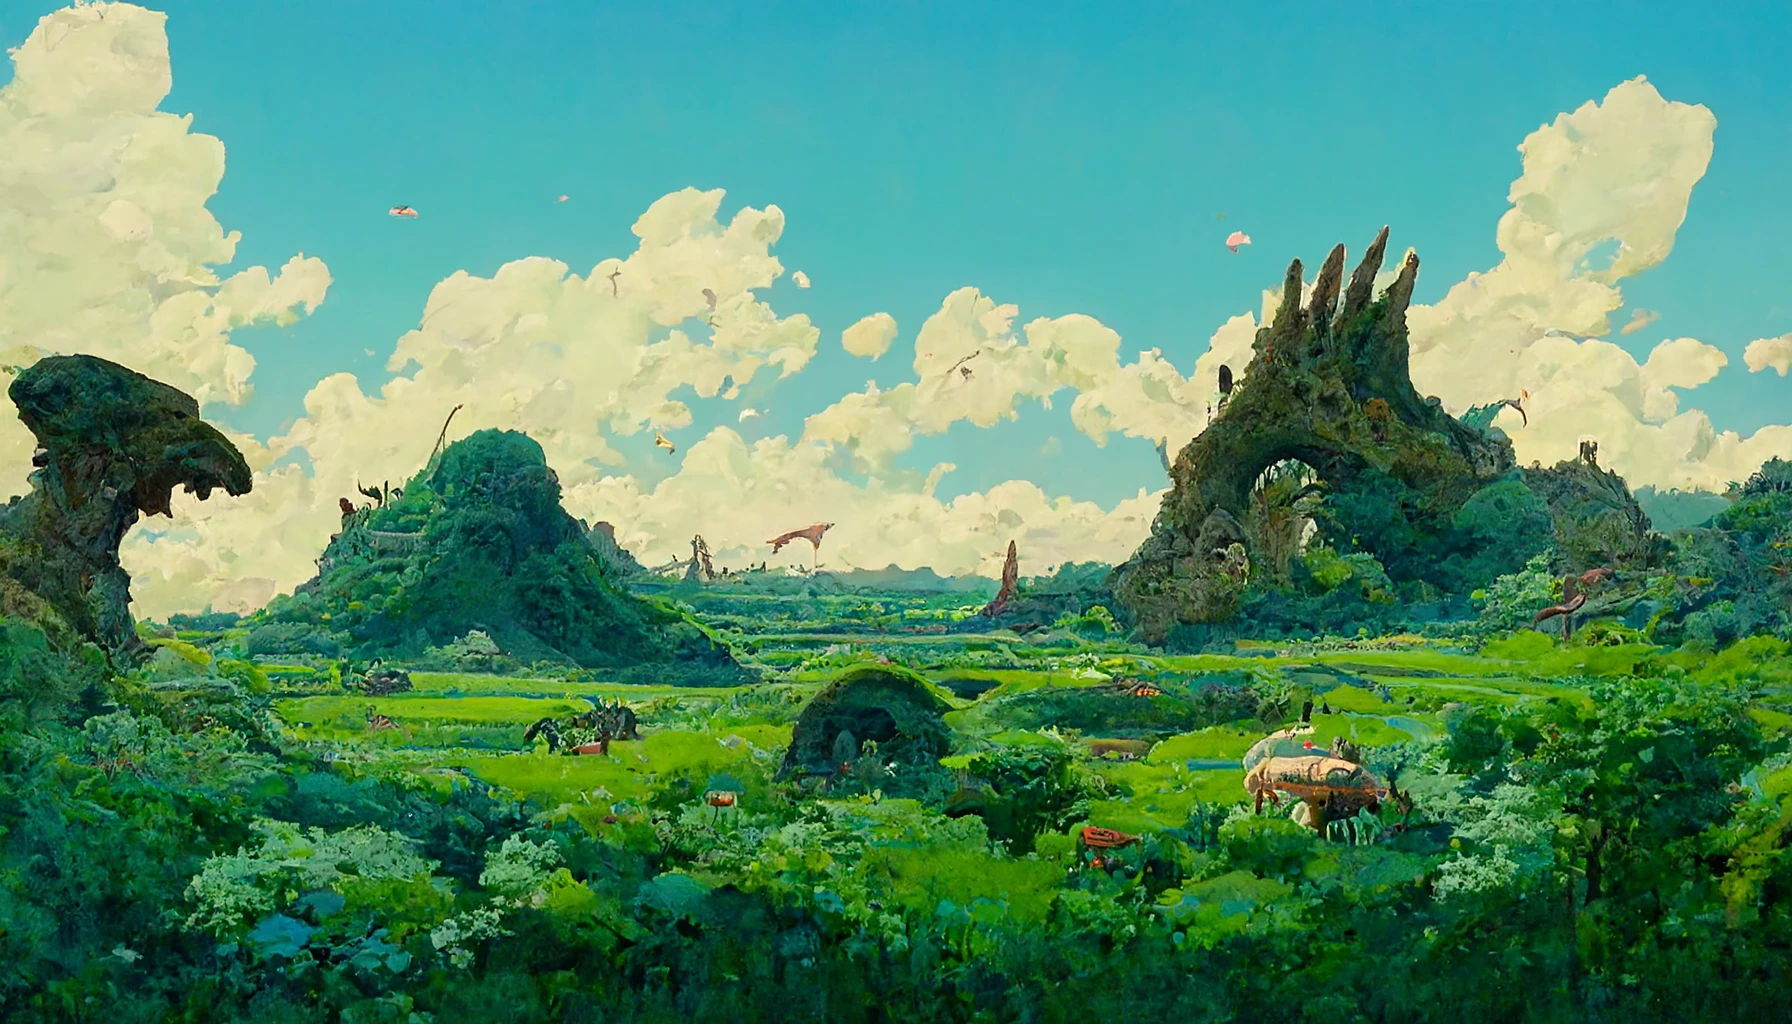 恐龙时代的巨大景观